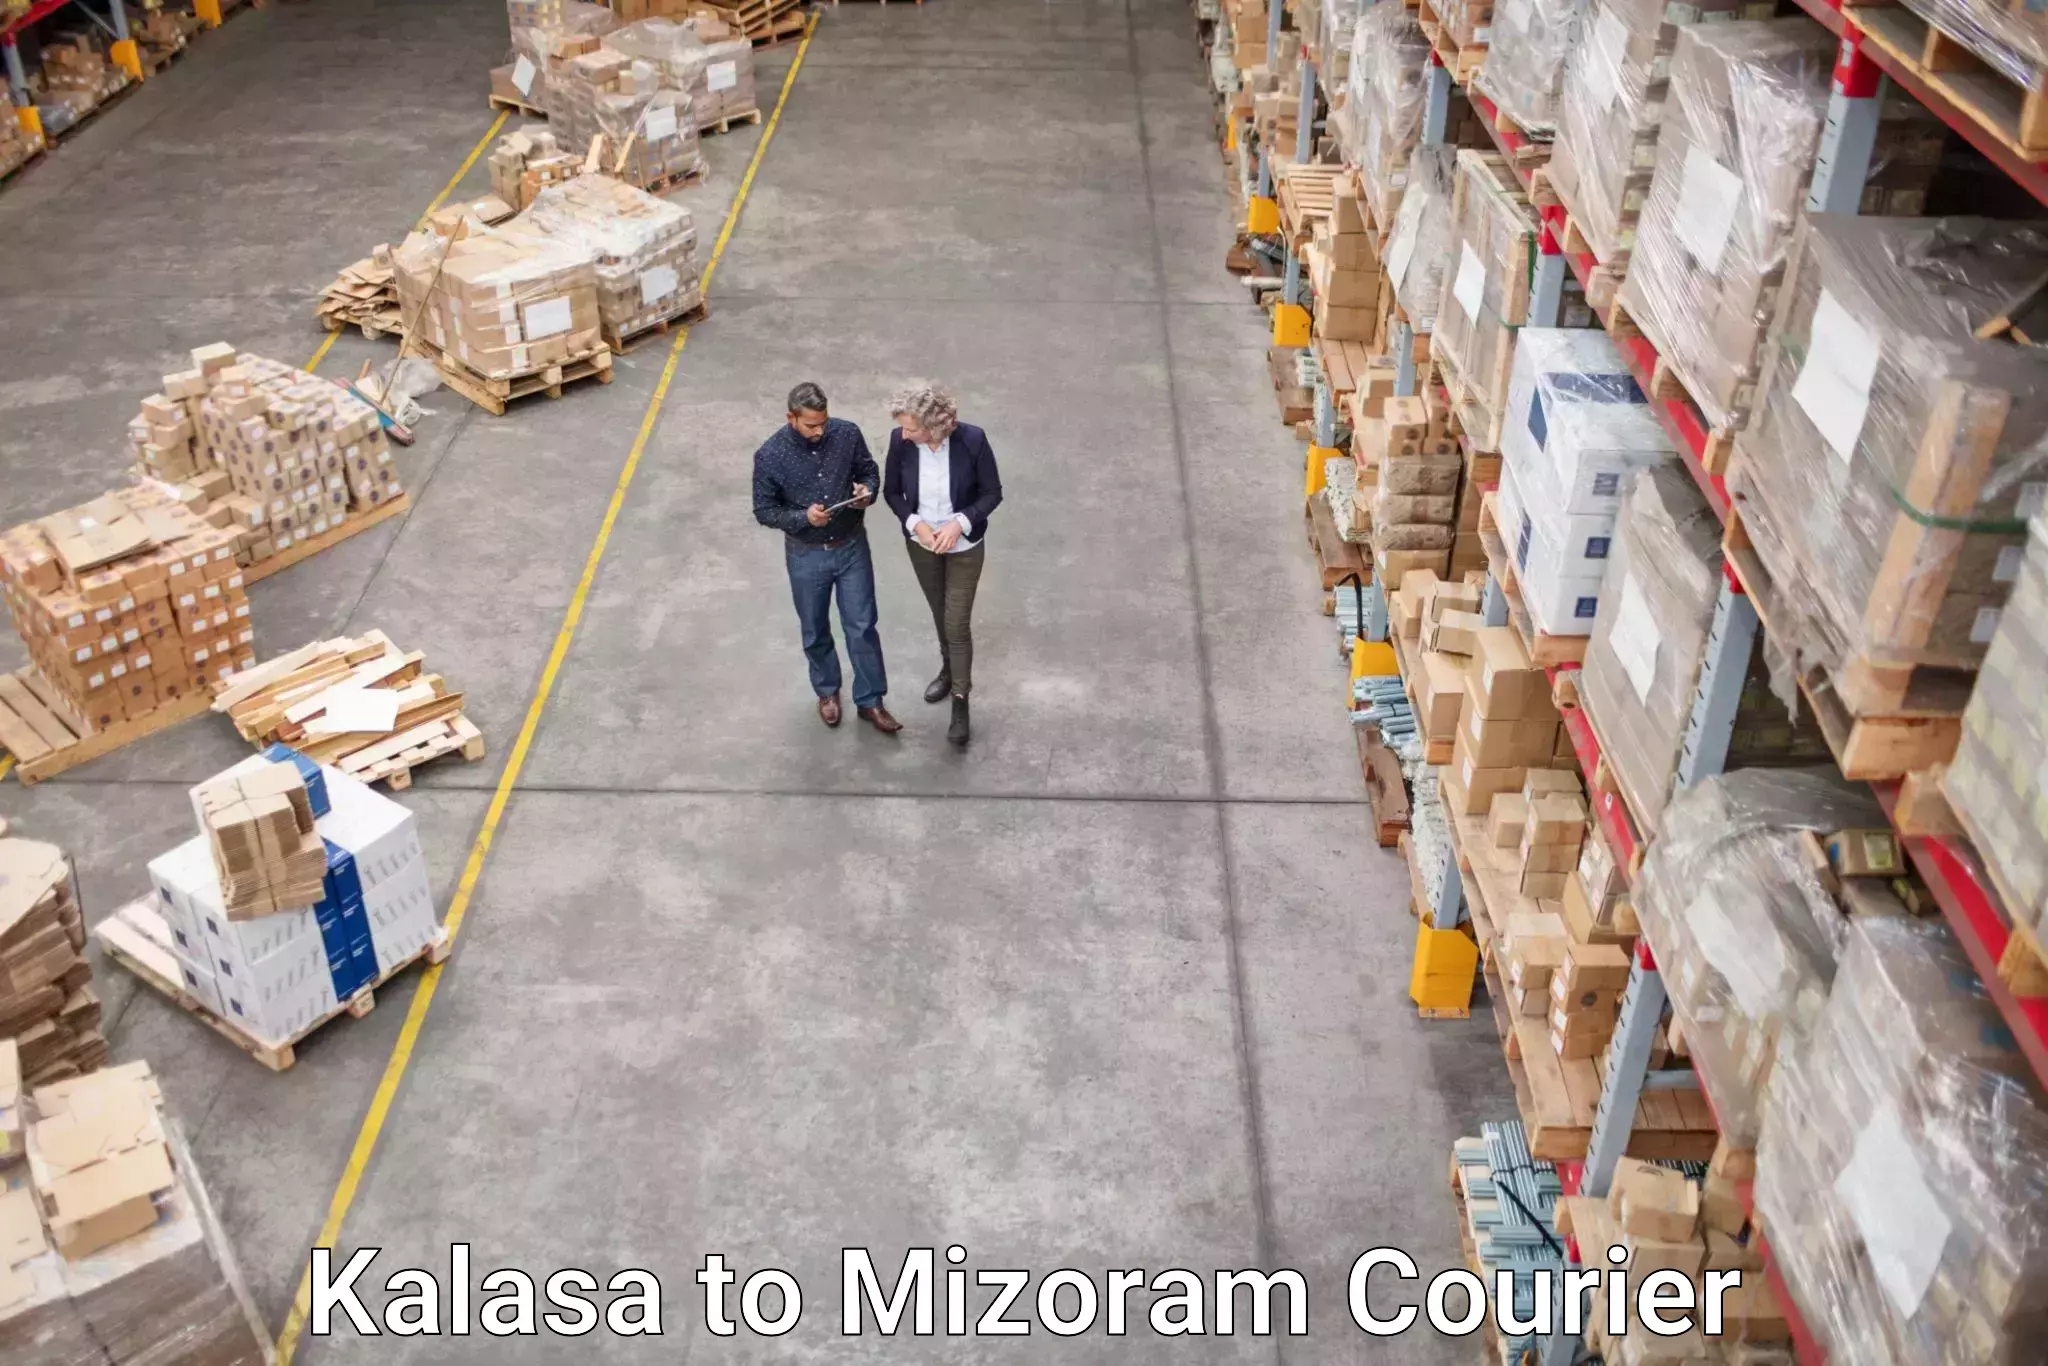 Express logistics providers Kalasa to Mizoram